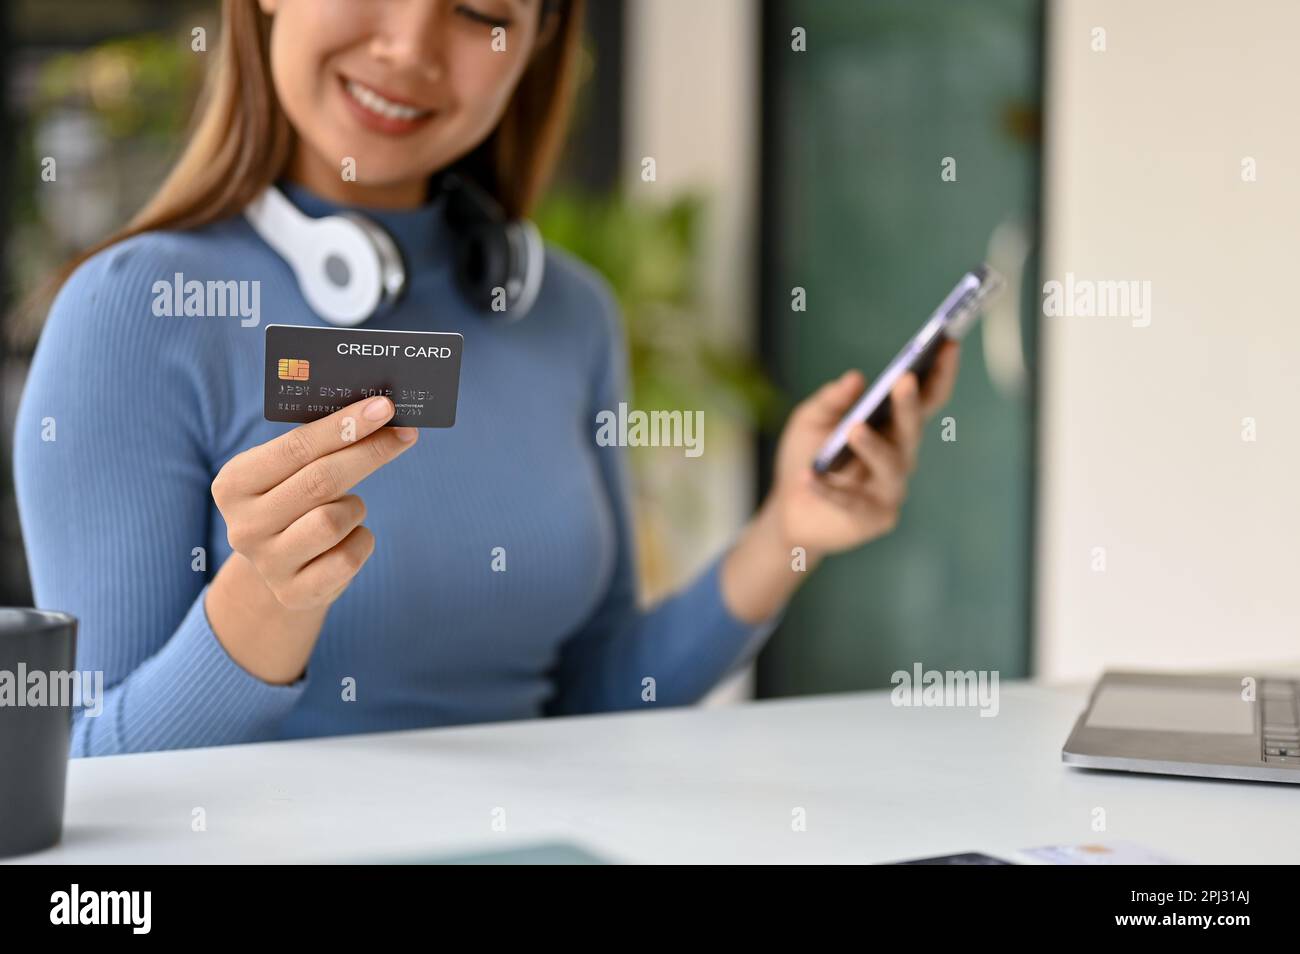 Une image rapprochée d'une femme asiatique millénaire souriante se trouve à une table, tient sa carte de crédit et son smartphone, et utilise l'application bancaire mobile pour payer les données en ligne Banque D'Images